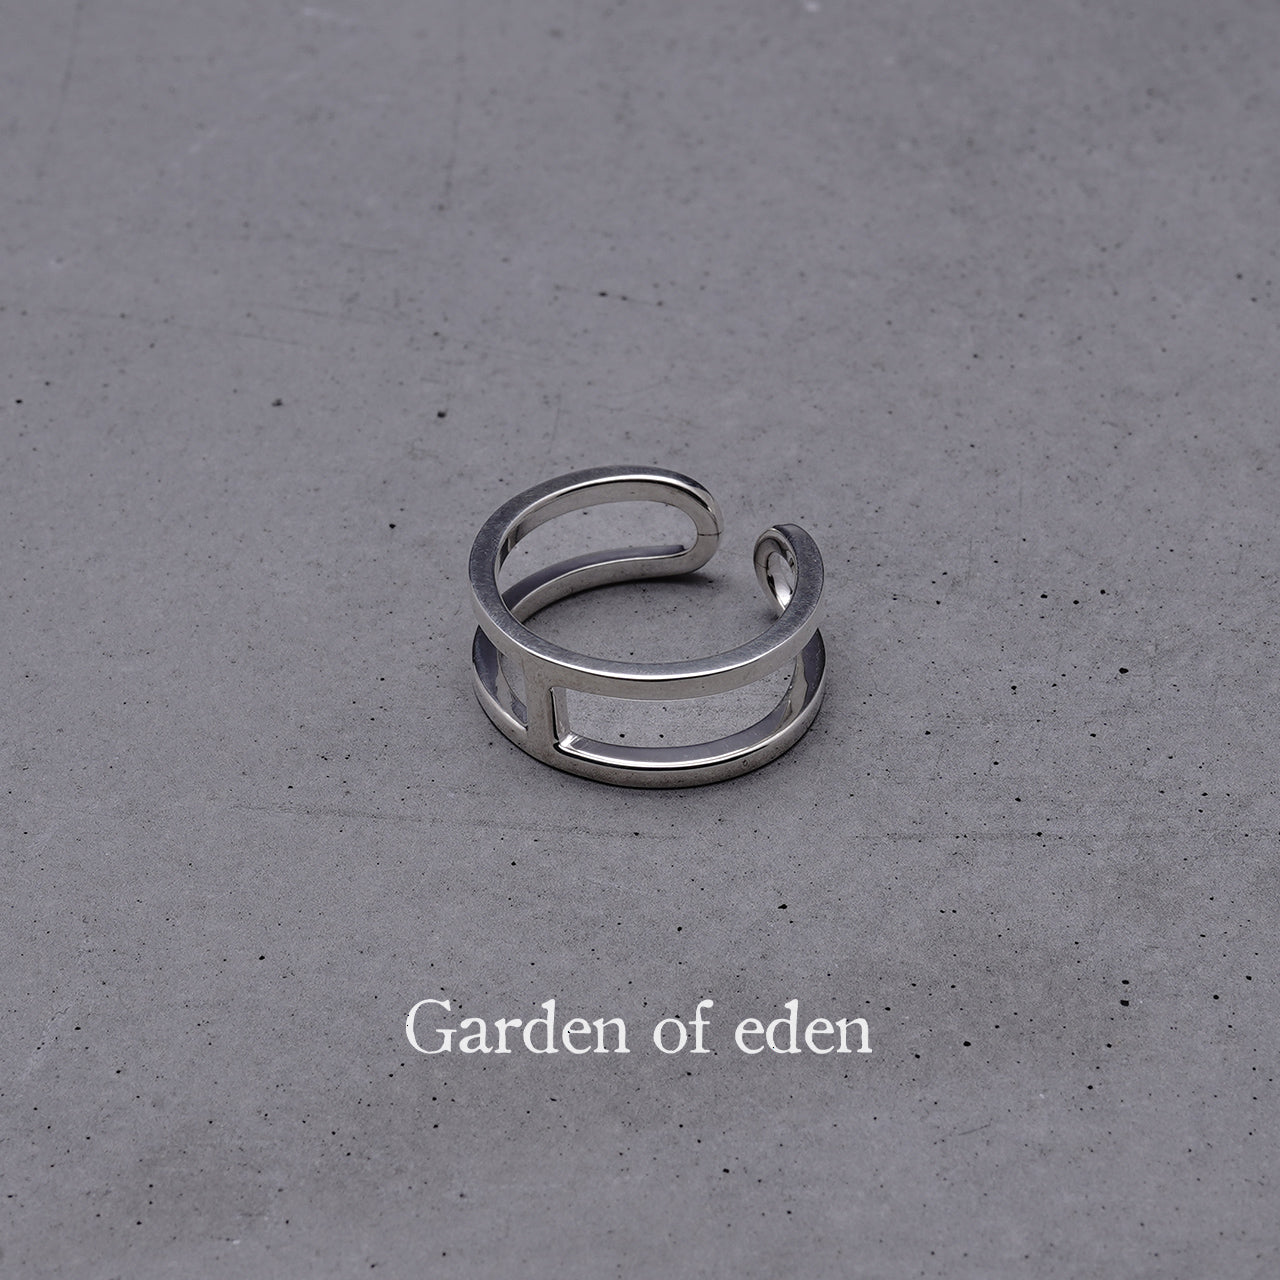 Garden of Eden ガーデンオブエデン アンカー リング ANCHOR RING (SMALL) シルバー925 指輪 イヤーカフ アクセサリー  22AW012 【送料無料】